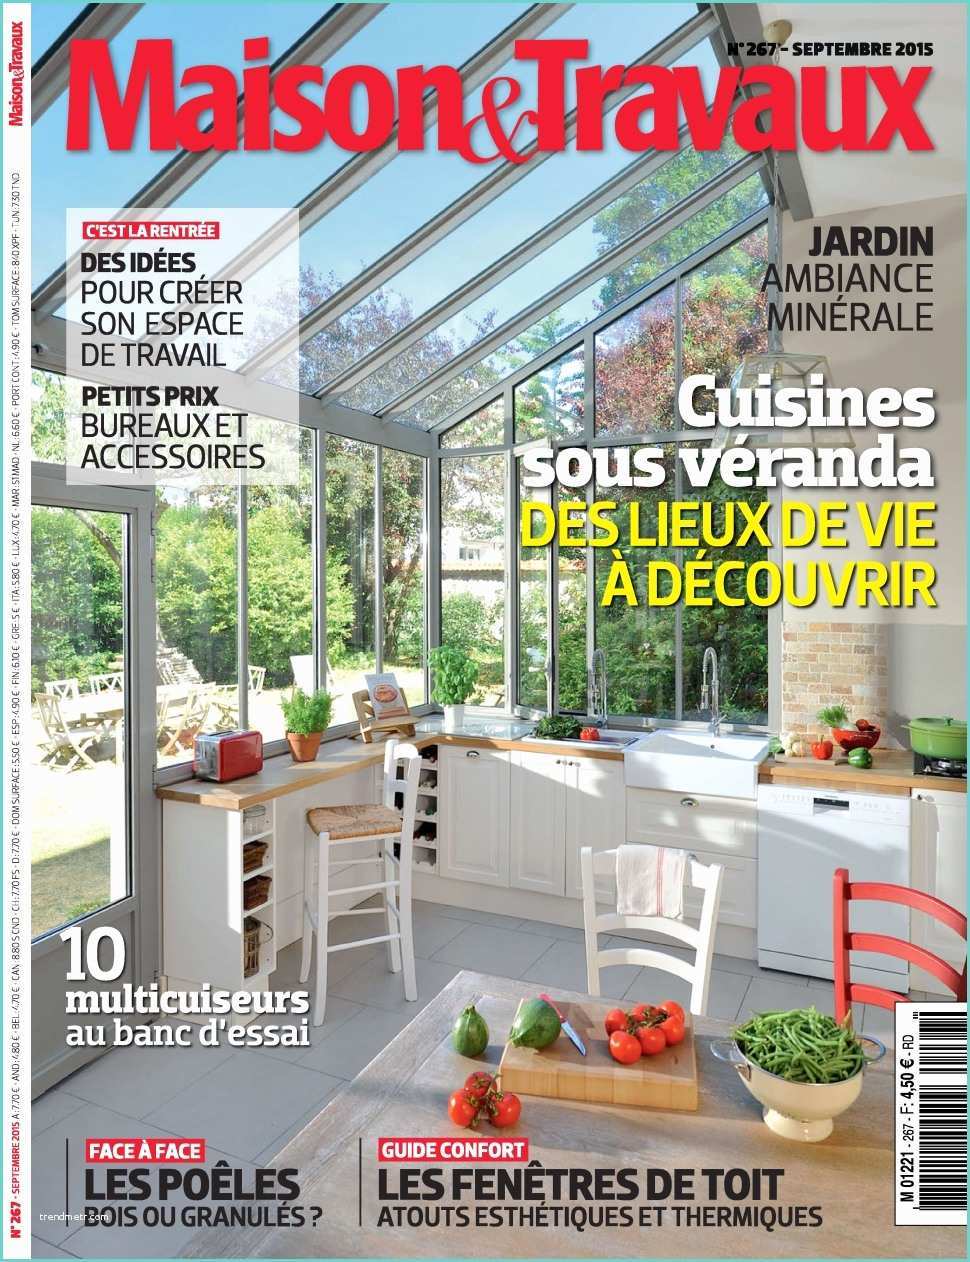 Maison Et Travaux Magazine Maison Et Travaux N°267 Septembre 2015 Telecharger